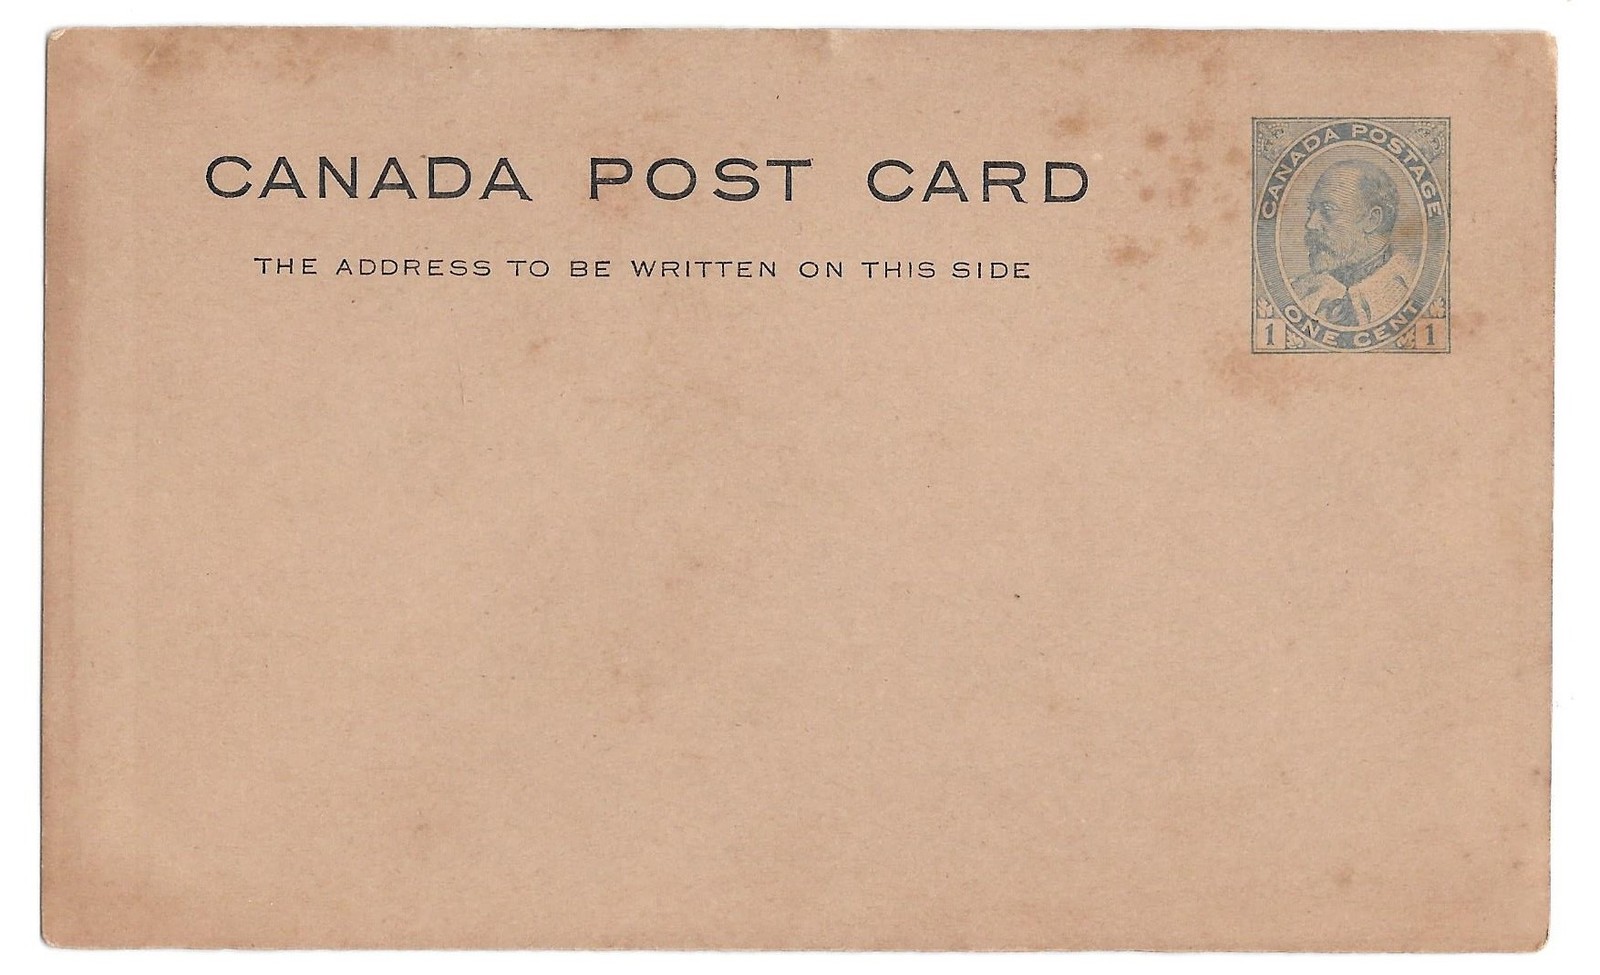 1903 Canada KEVII Postal Stationery Card Sc UX22 Dark Buff Unused - $4.99